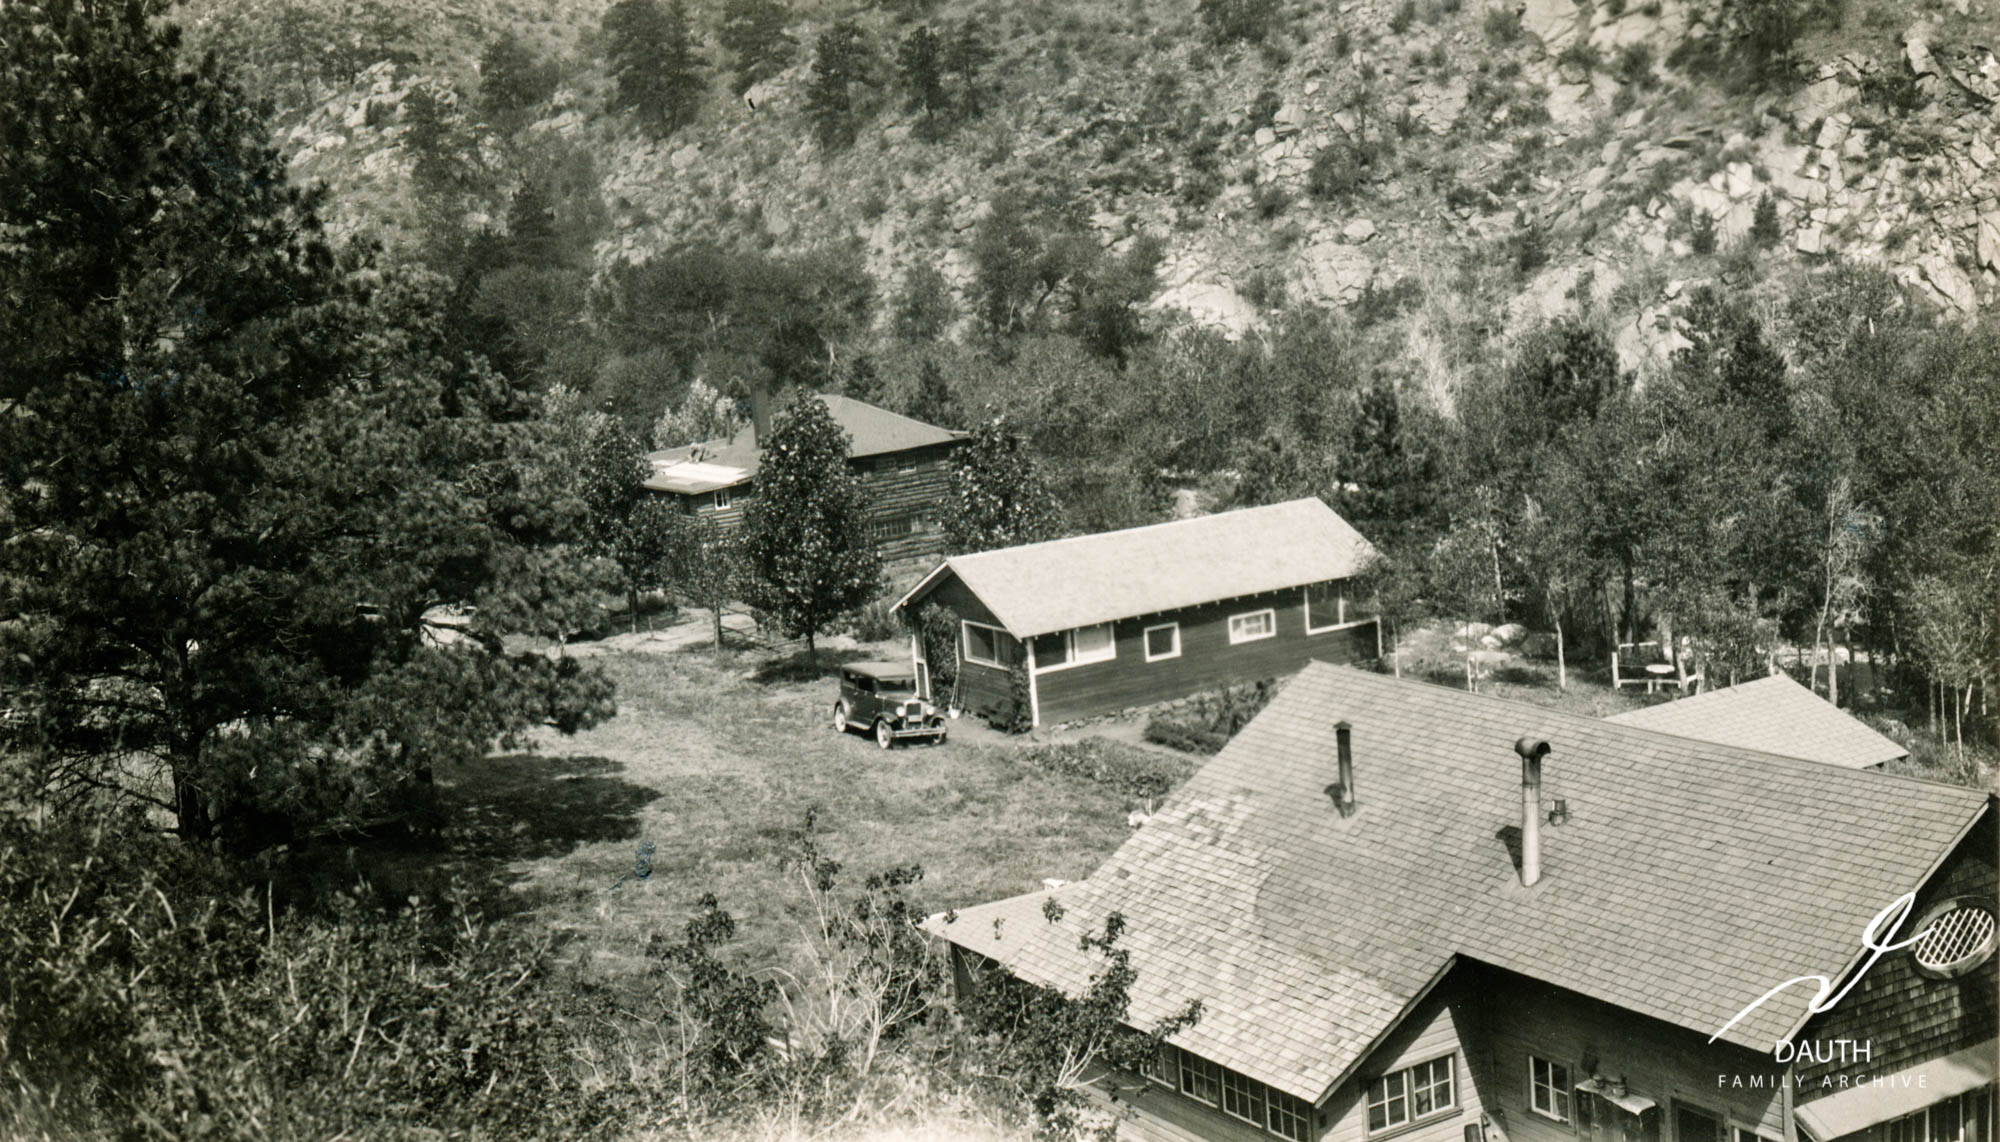 Idlewild Lodge - idlewildlodge.github.io - Circa 1930 - Idlewild - Looking West At Idlewild Lodge, DAMFINO And